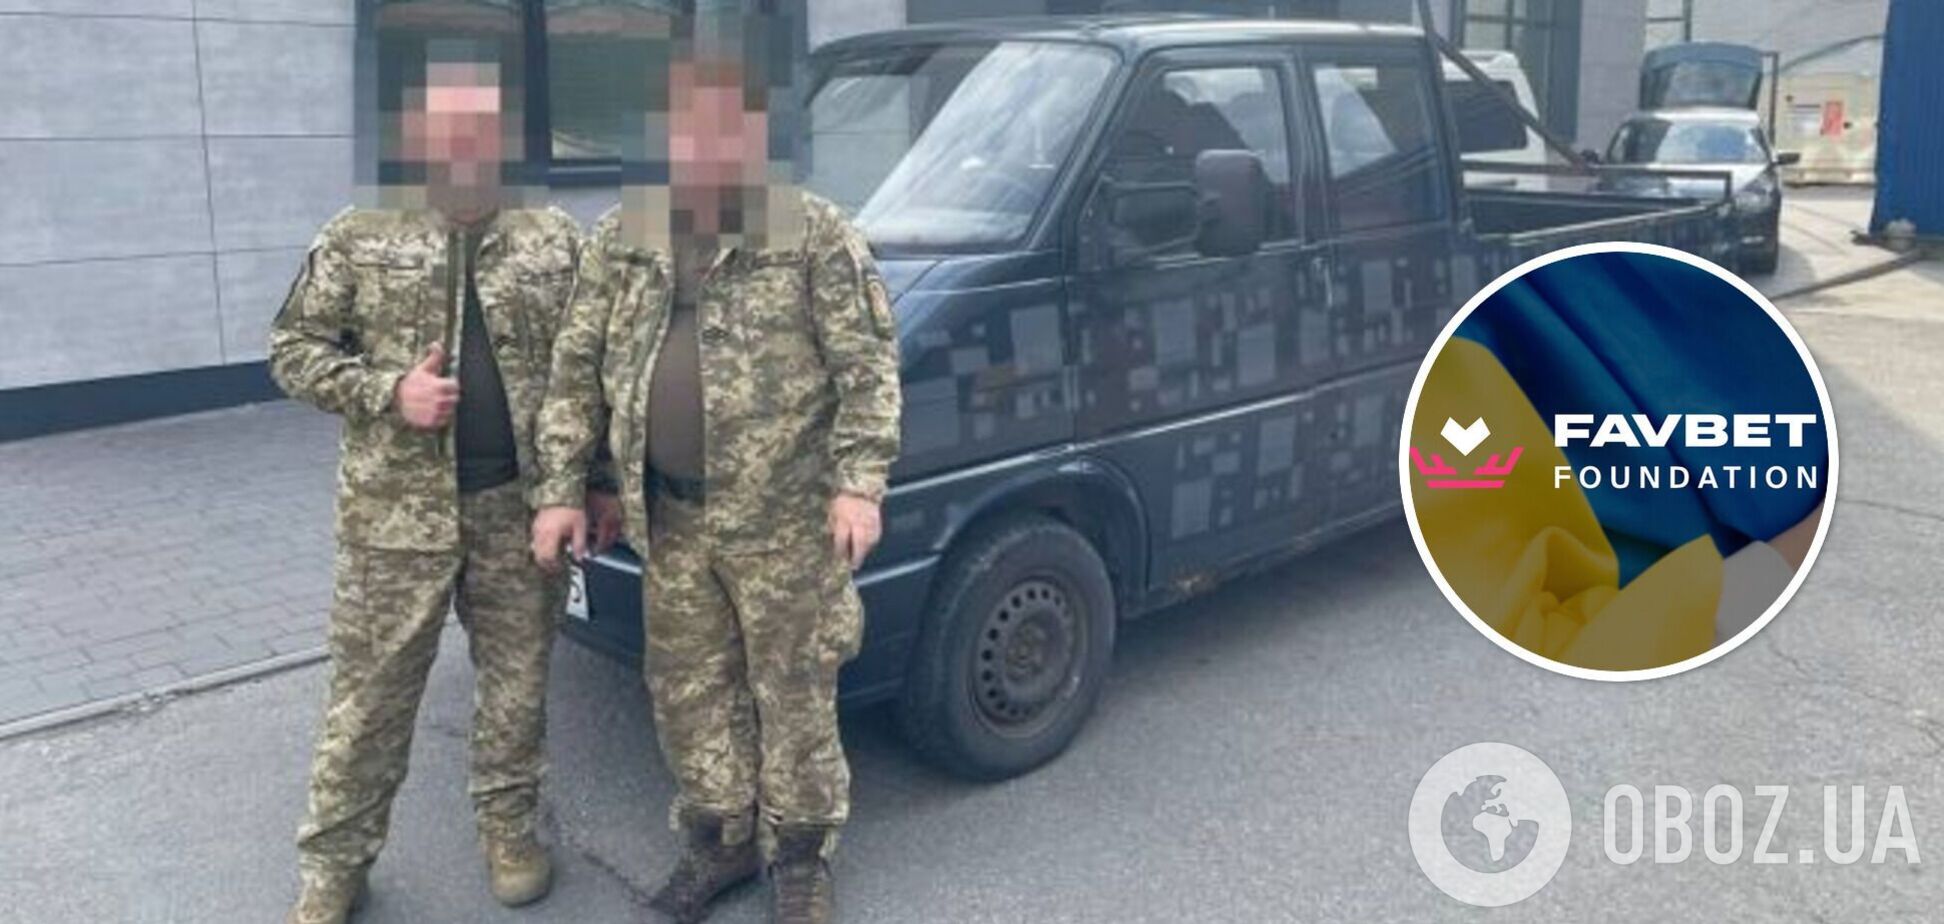 Украинские защитники получили от Favbet Foundation еще два микроавтобуса и внедорожник